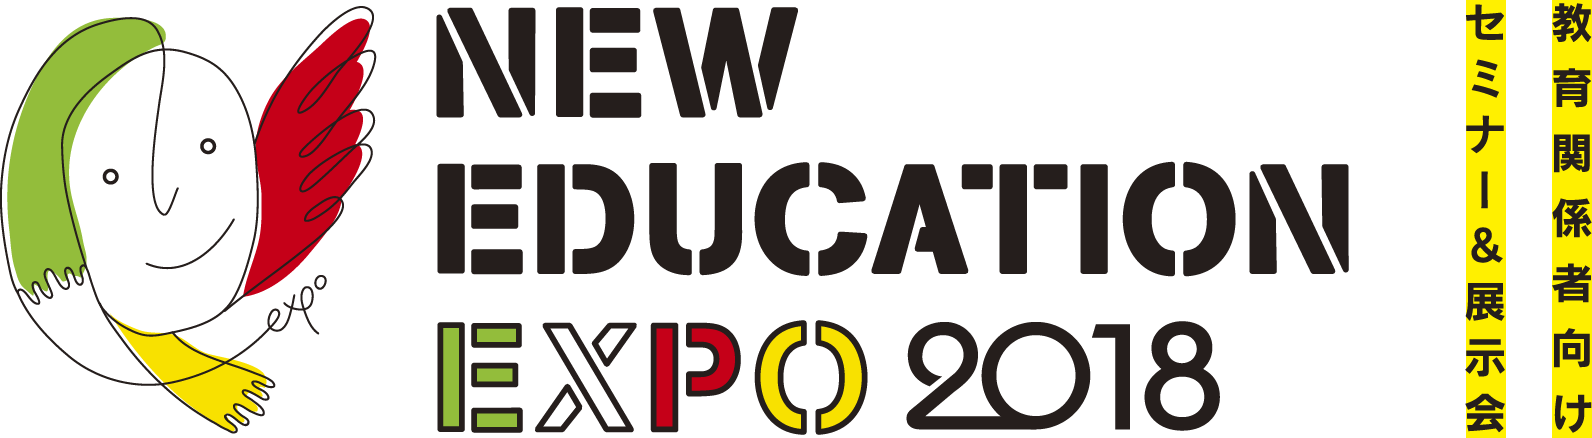 NEW EDUCATON EXPO 2018